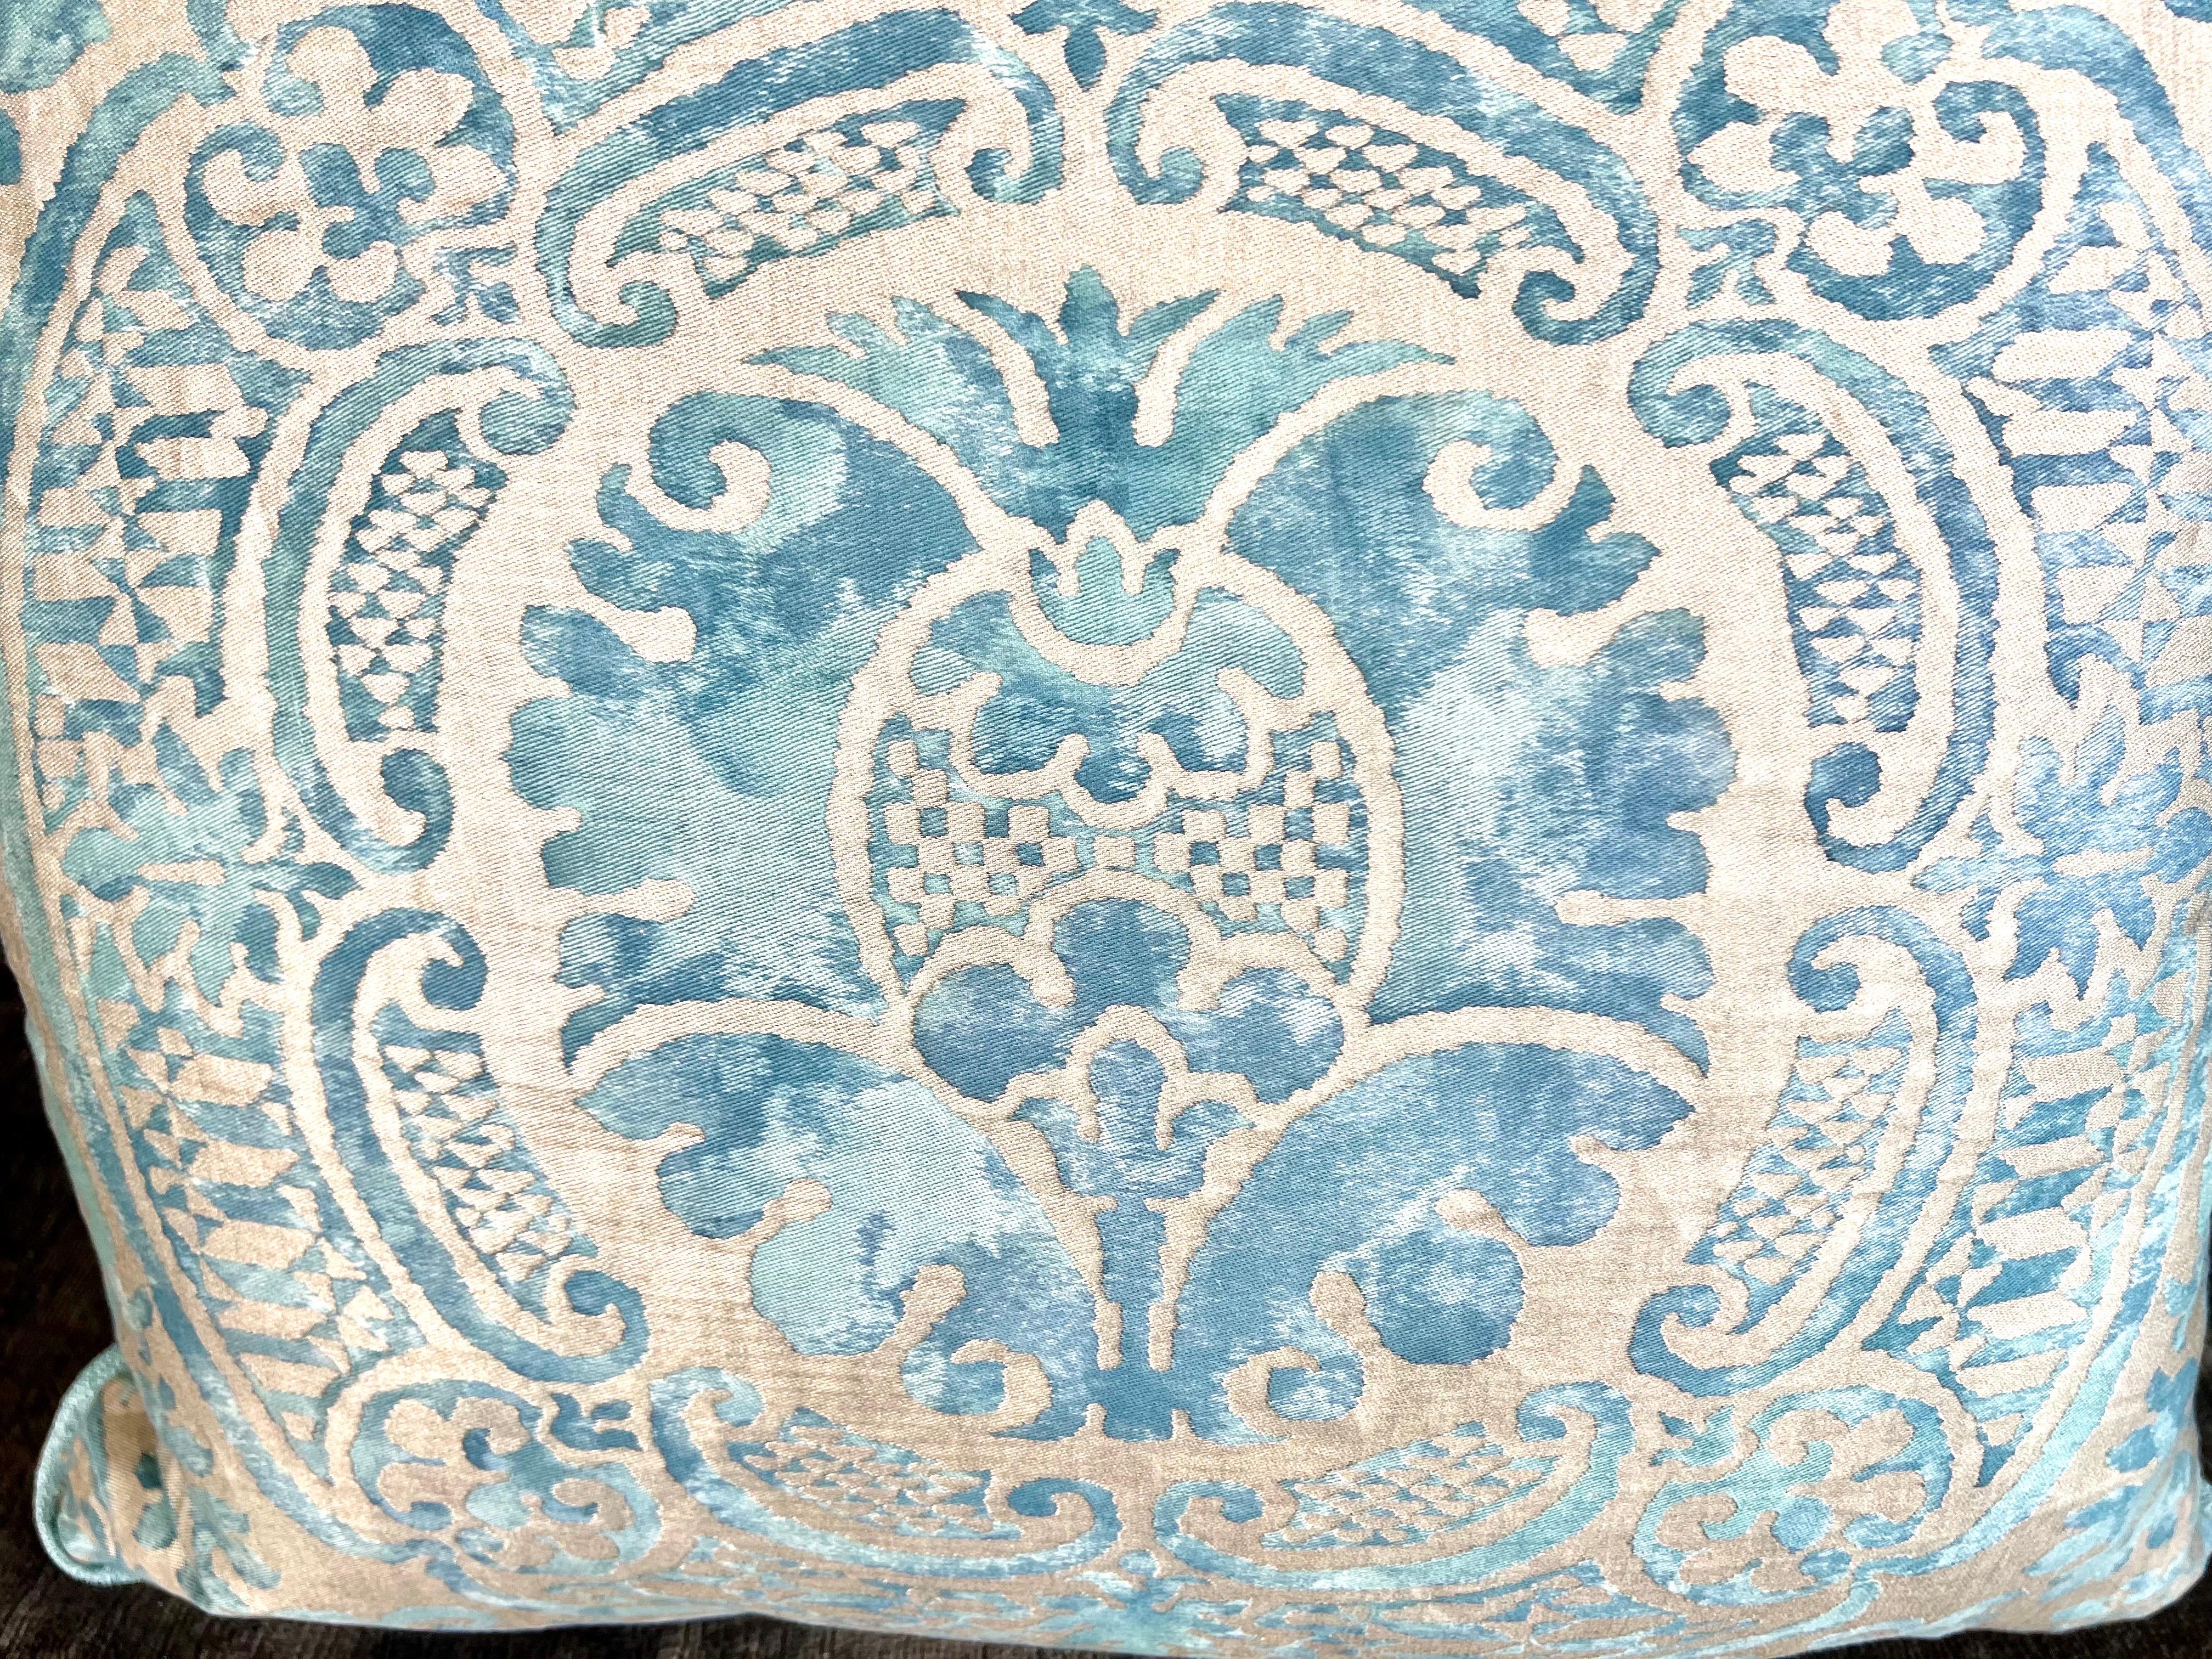 Coussins en textile Fortuny du milieu du 20e siècle au motif Orsini.  Les différentes nuances de bleus qui se mélangent sur un fond argenté et doré créent un effet aquarelle envoûtant.  Le doux dos en velours bleu argenté ajoute à la sensation de